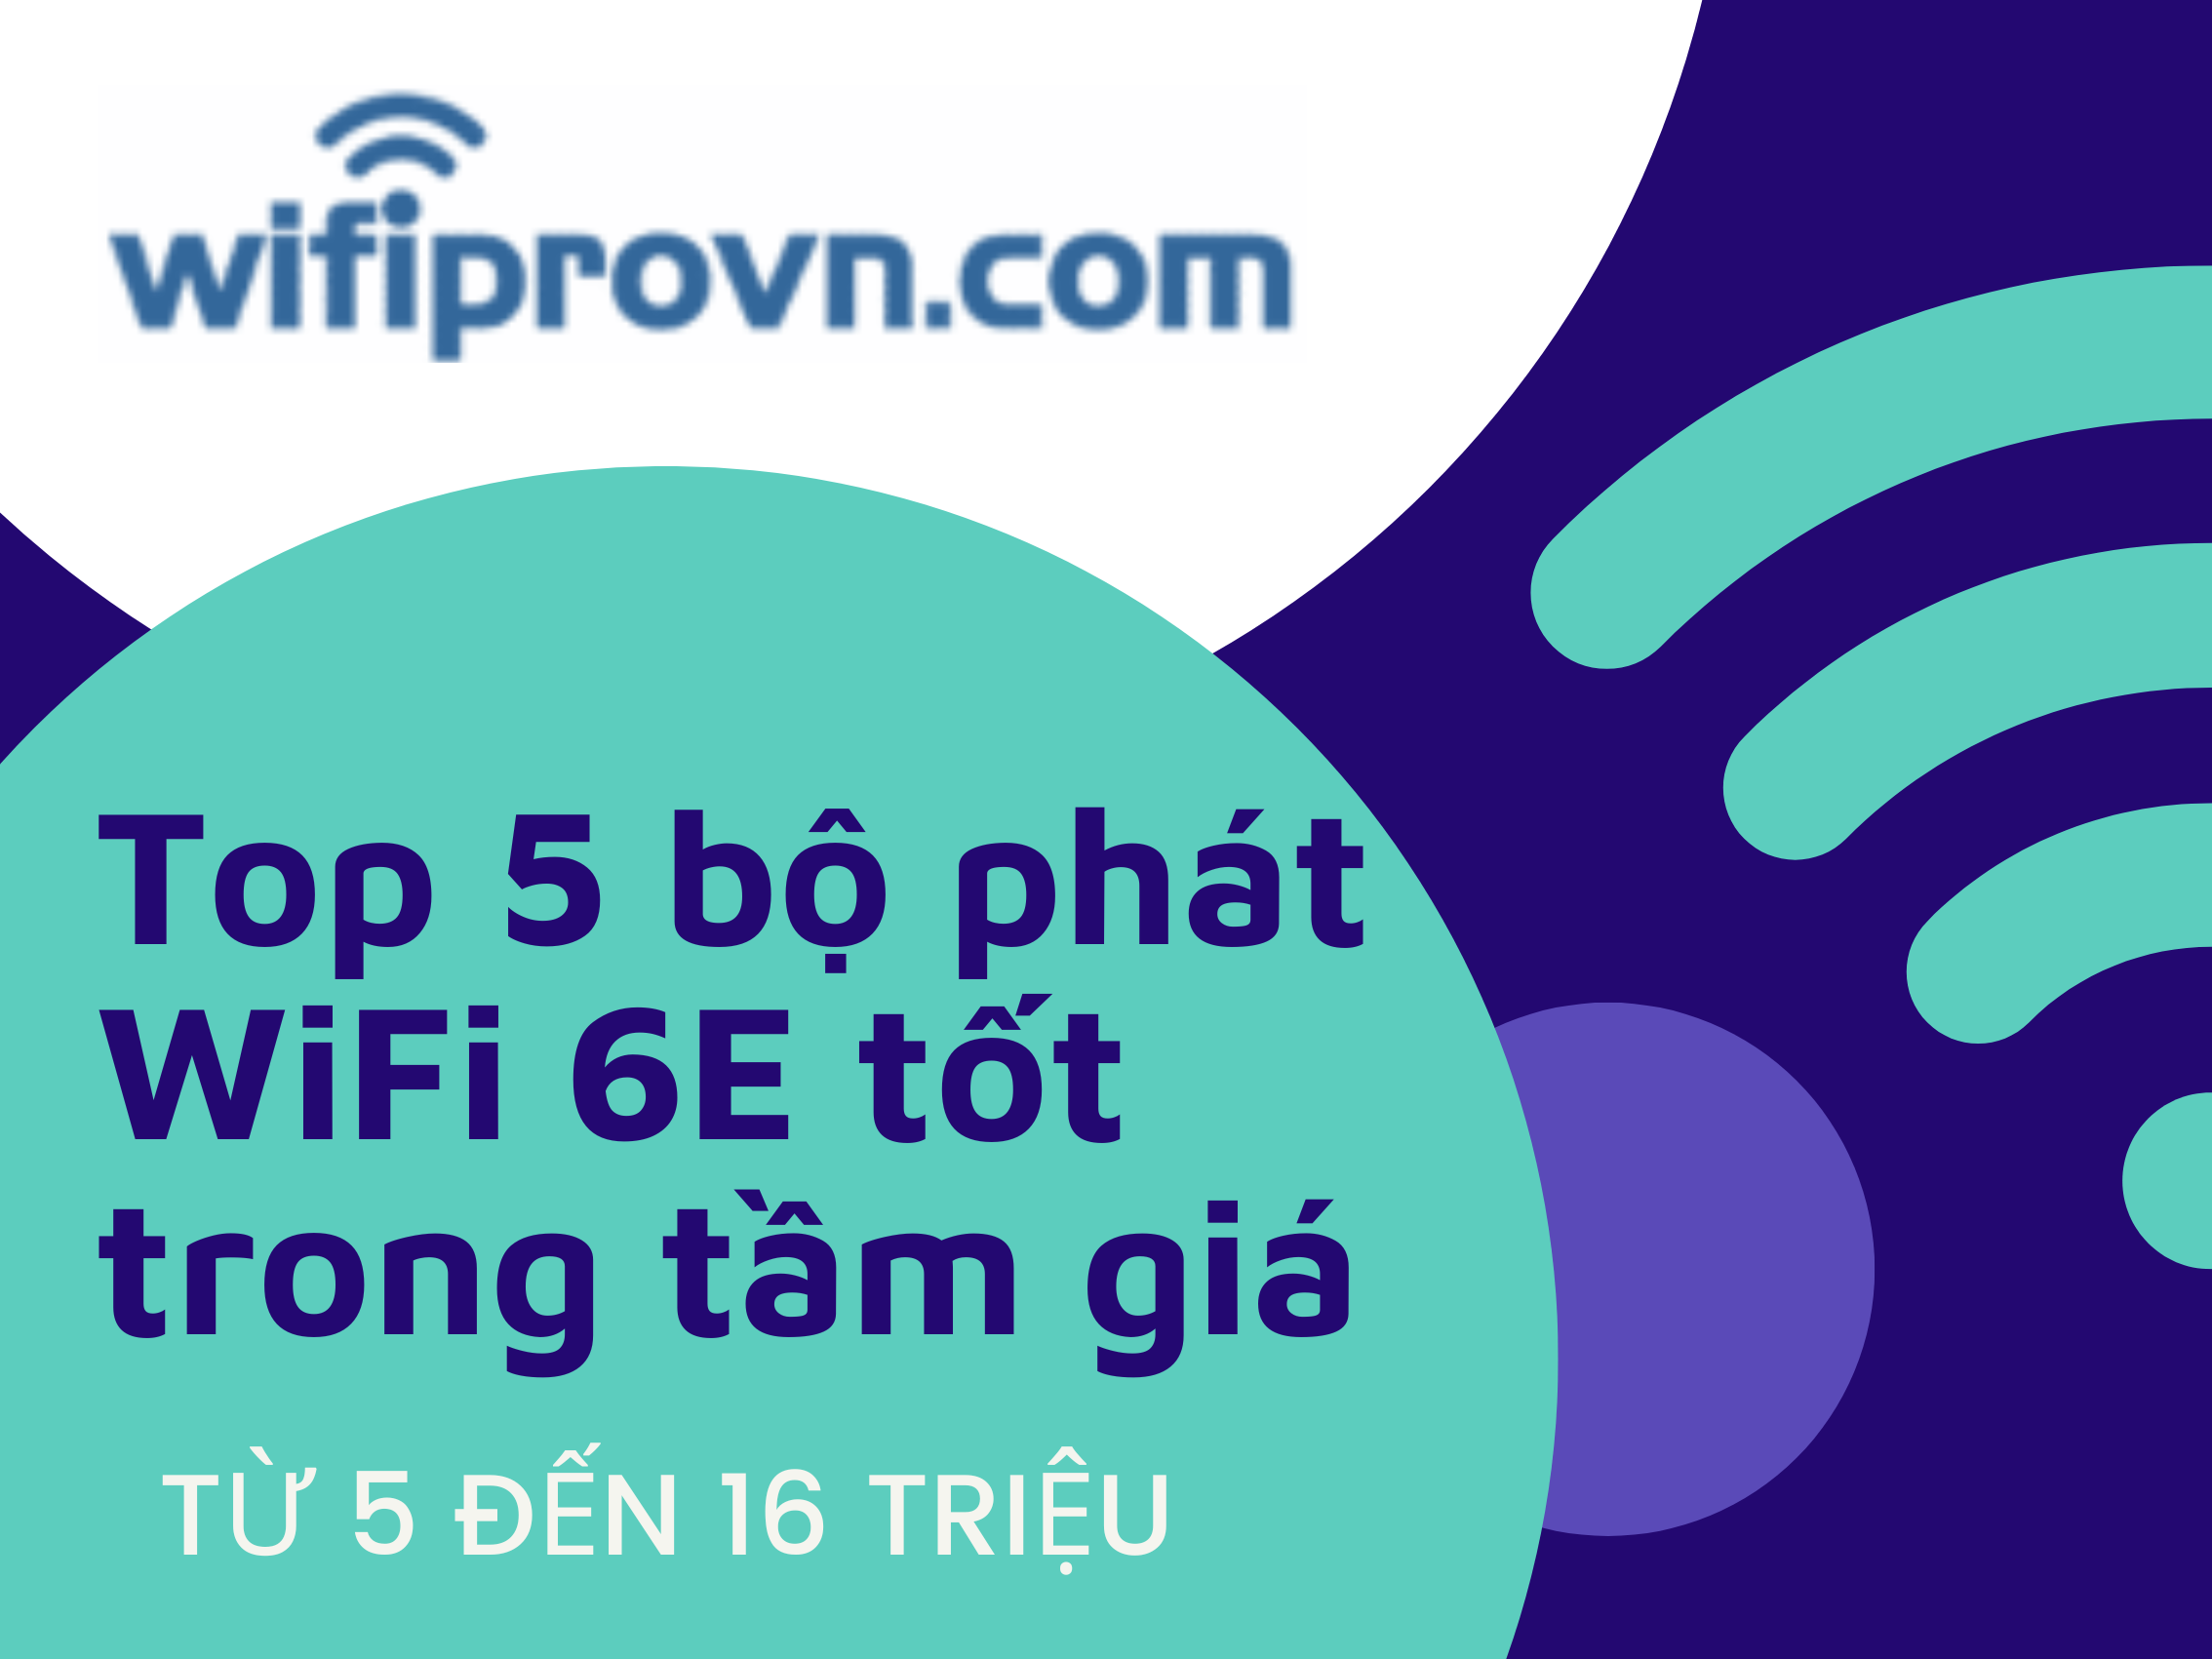 https://www.wifiprovn.com/top-5-router-wifi-ac1900-dan-cong-nghe-nen-can-nhac/